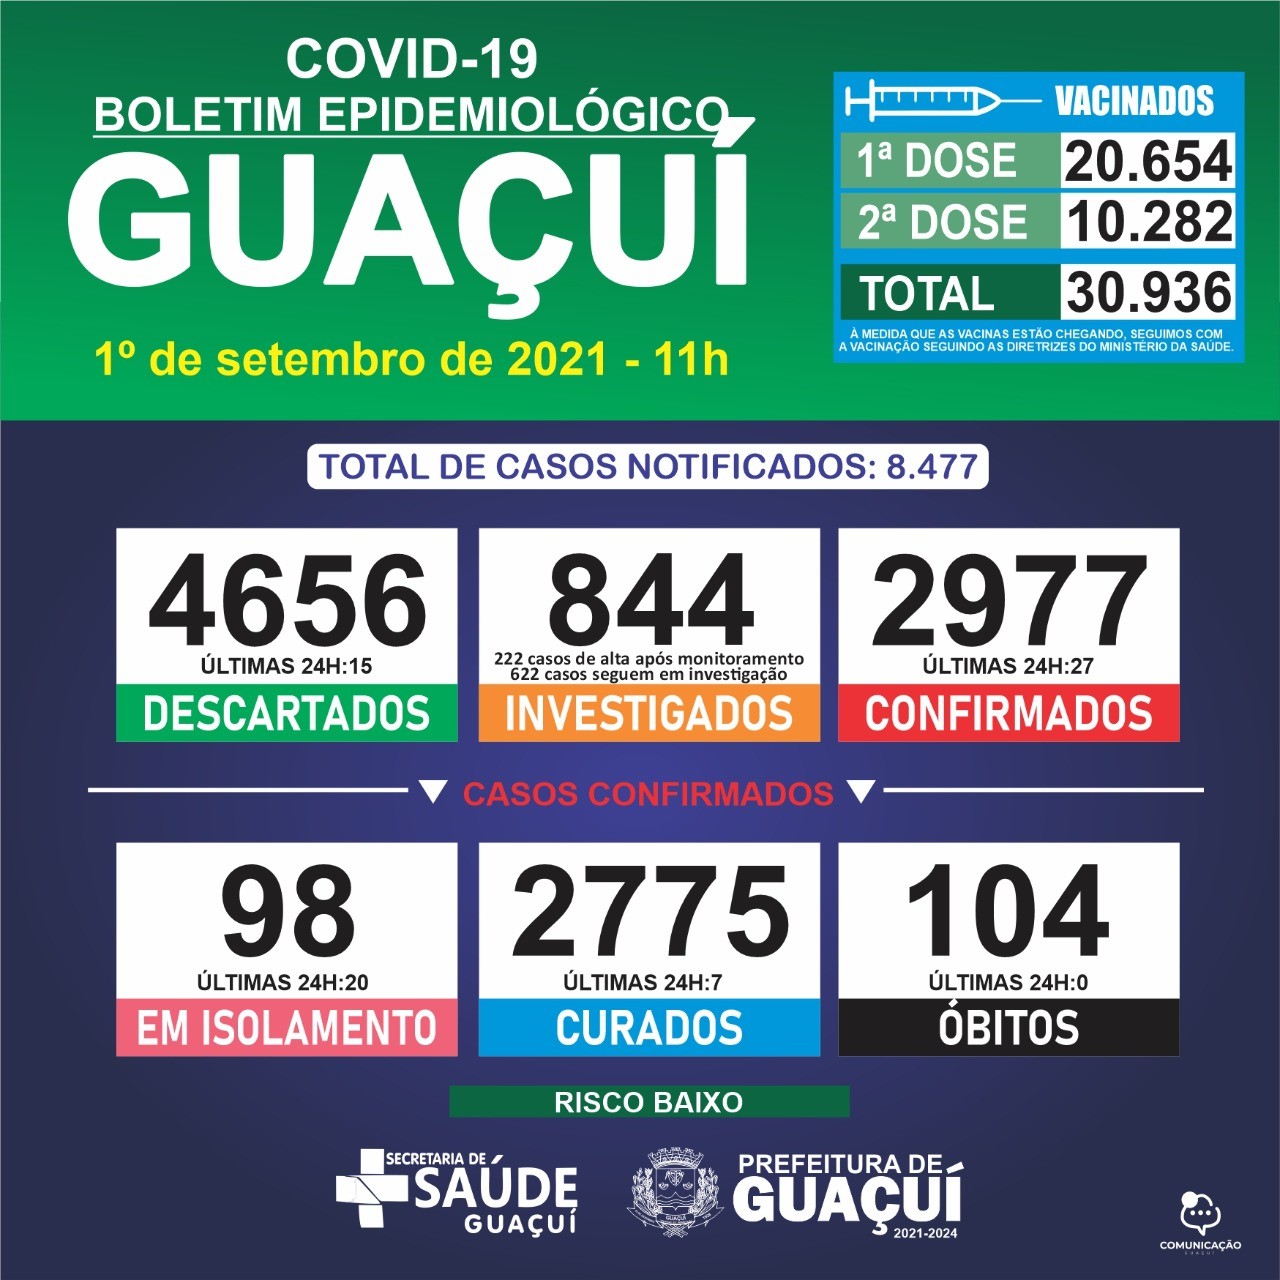 Boletim Epidemiológico 01/09/21: Guaçuí registra 27 casos confirmados e 7 curados nas últimas 24 horas